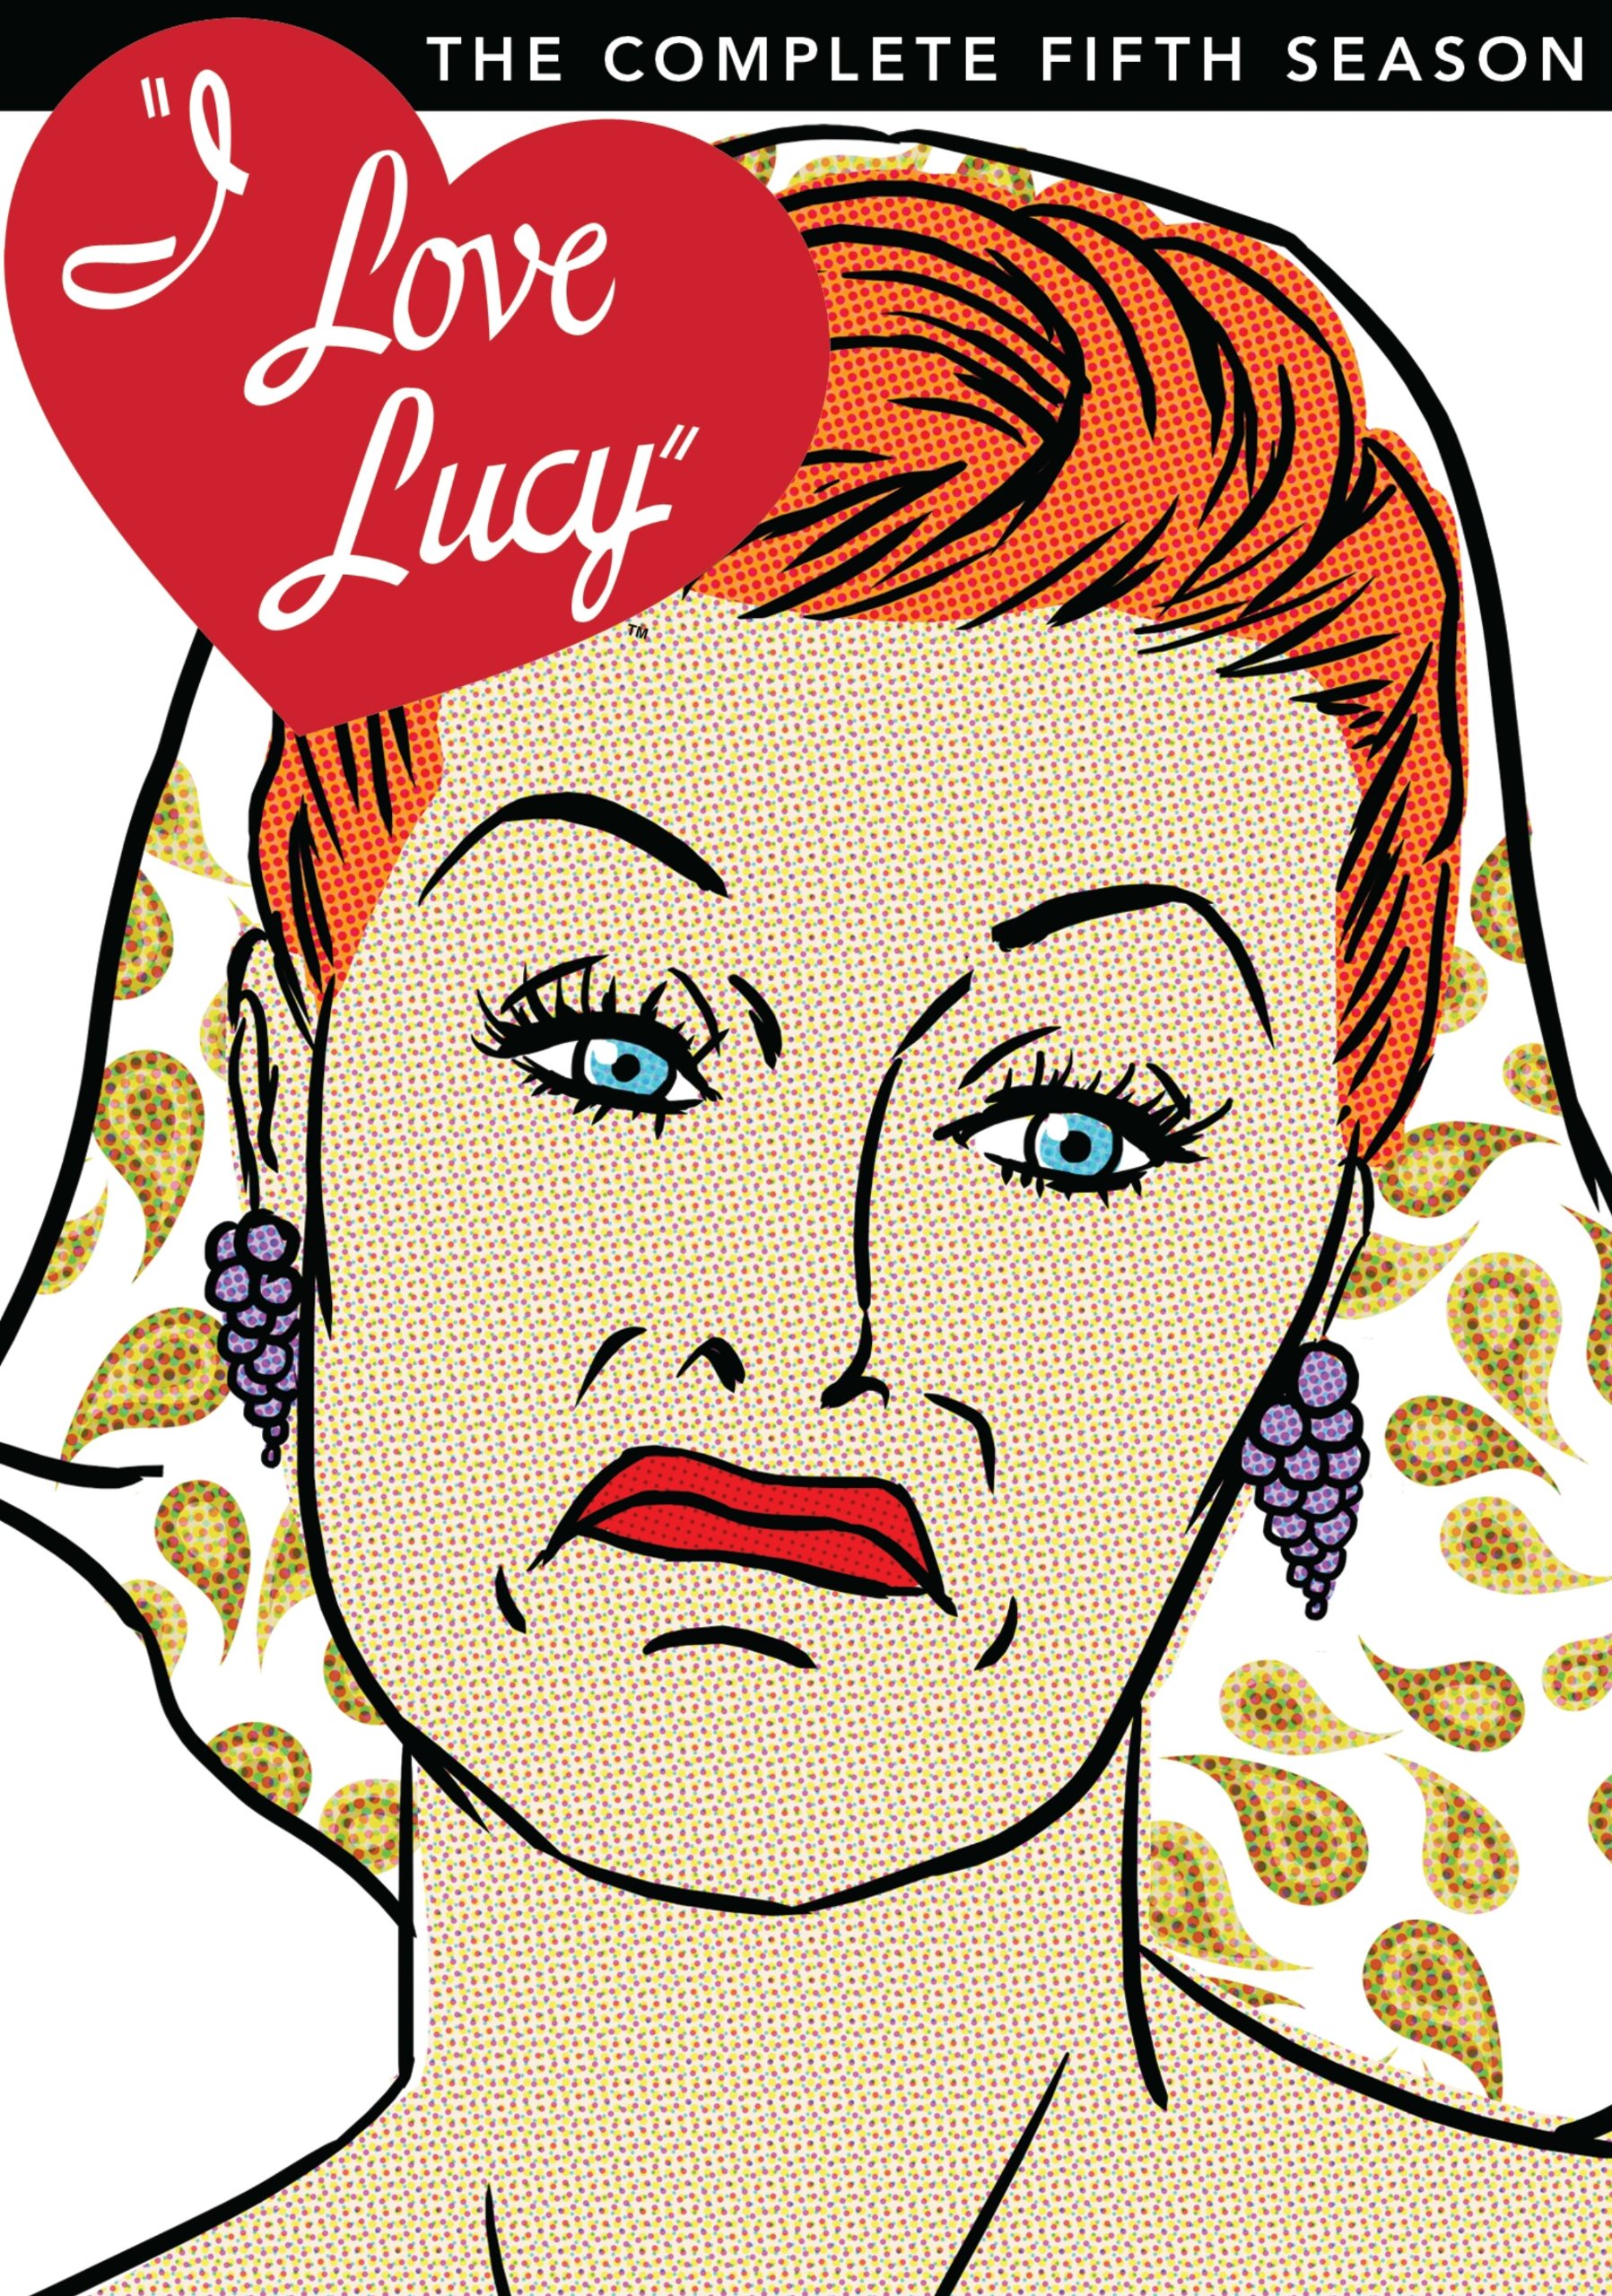 Я люблю люси 1951. Я люблю Люси. Я люблю Люси Джон Уэйн. I Love Lucy DVD. Lucy DVD Cover.